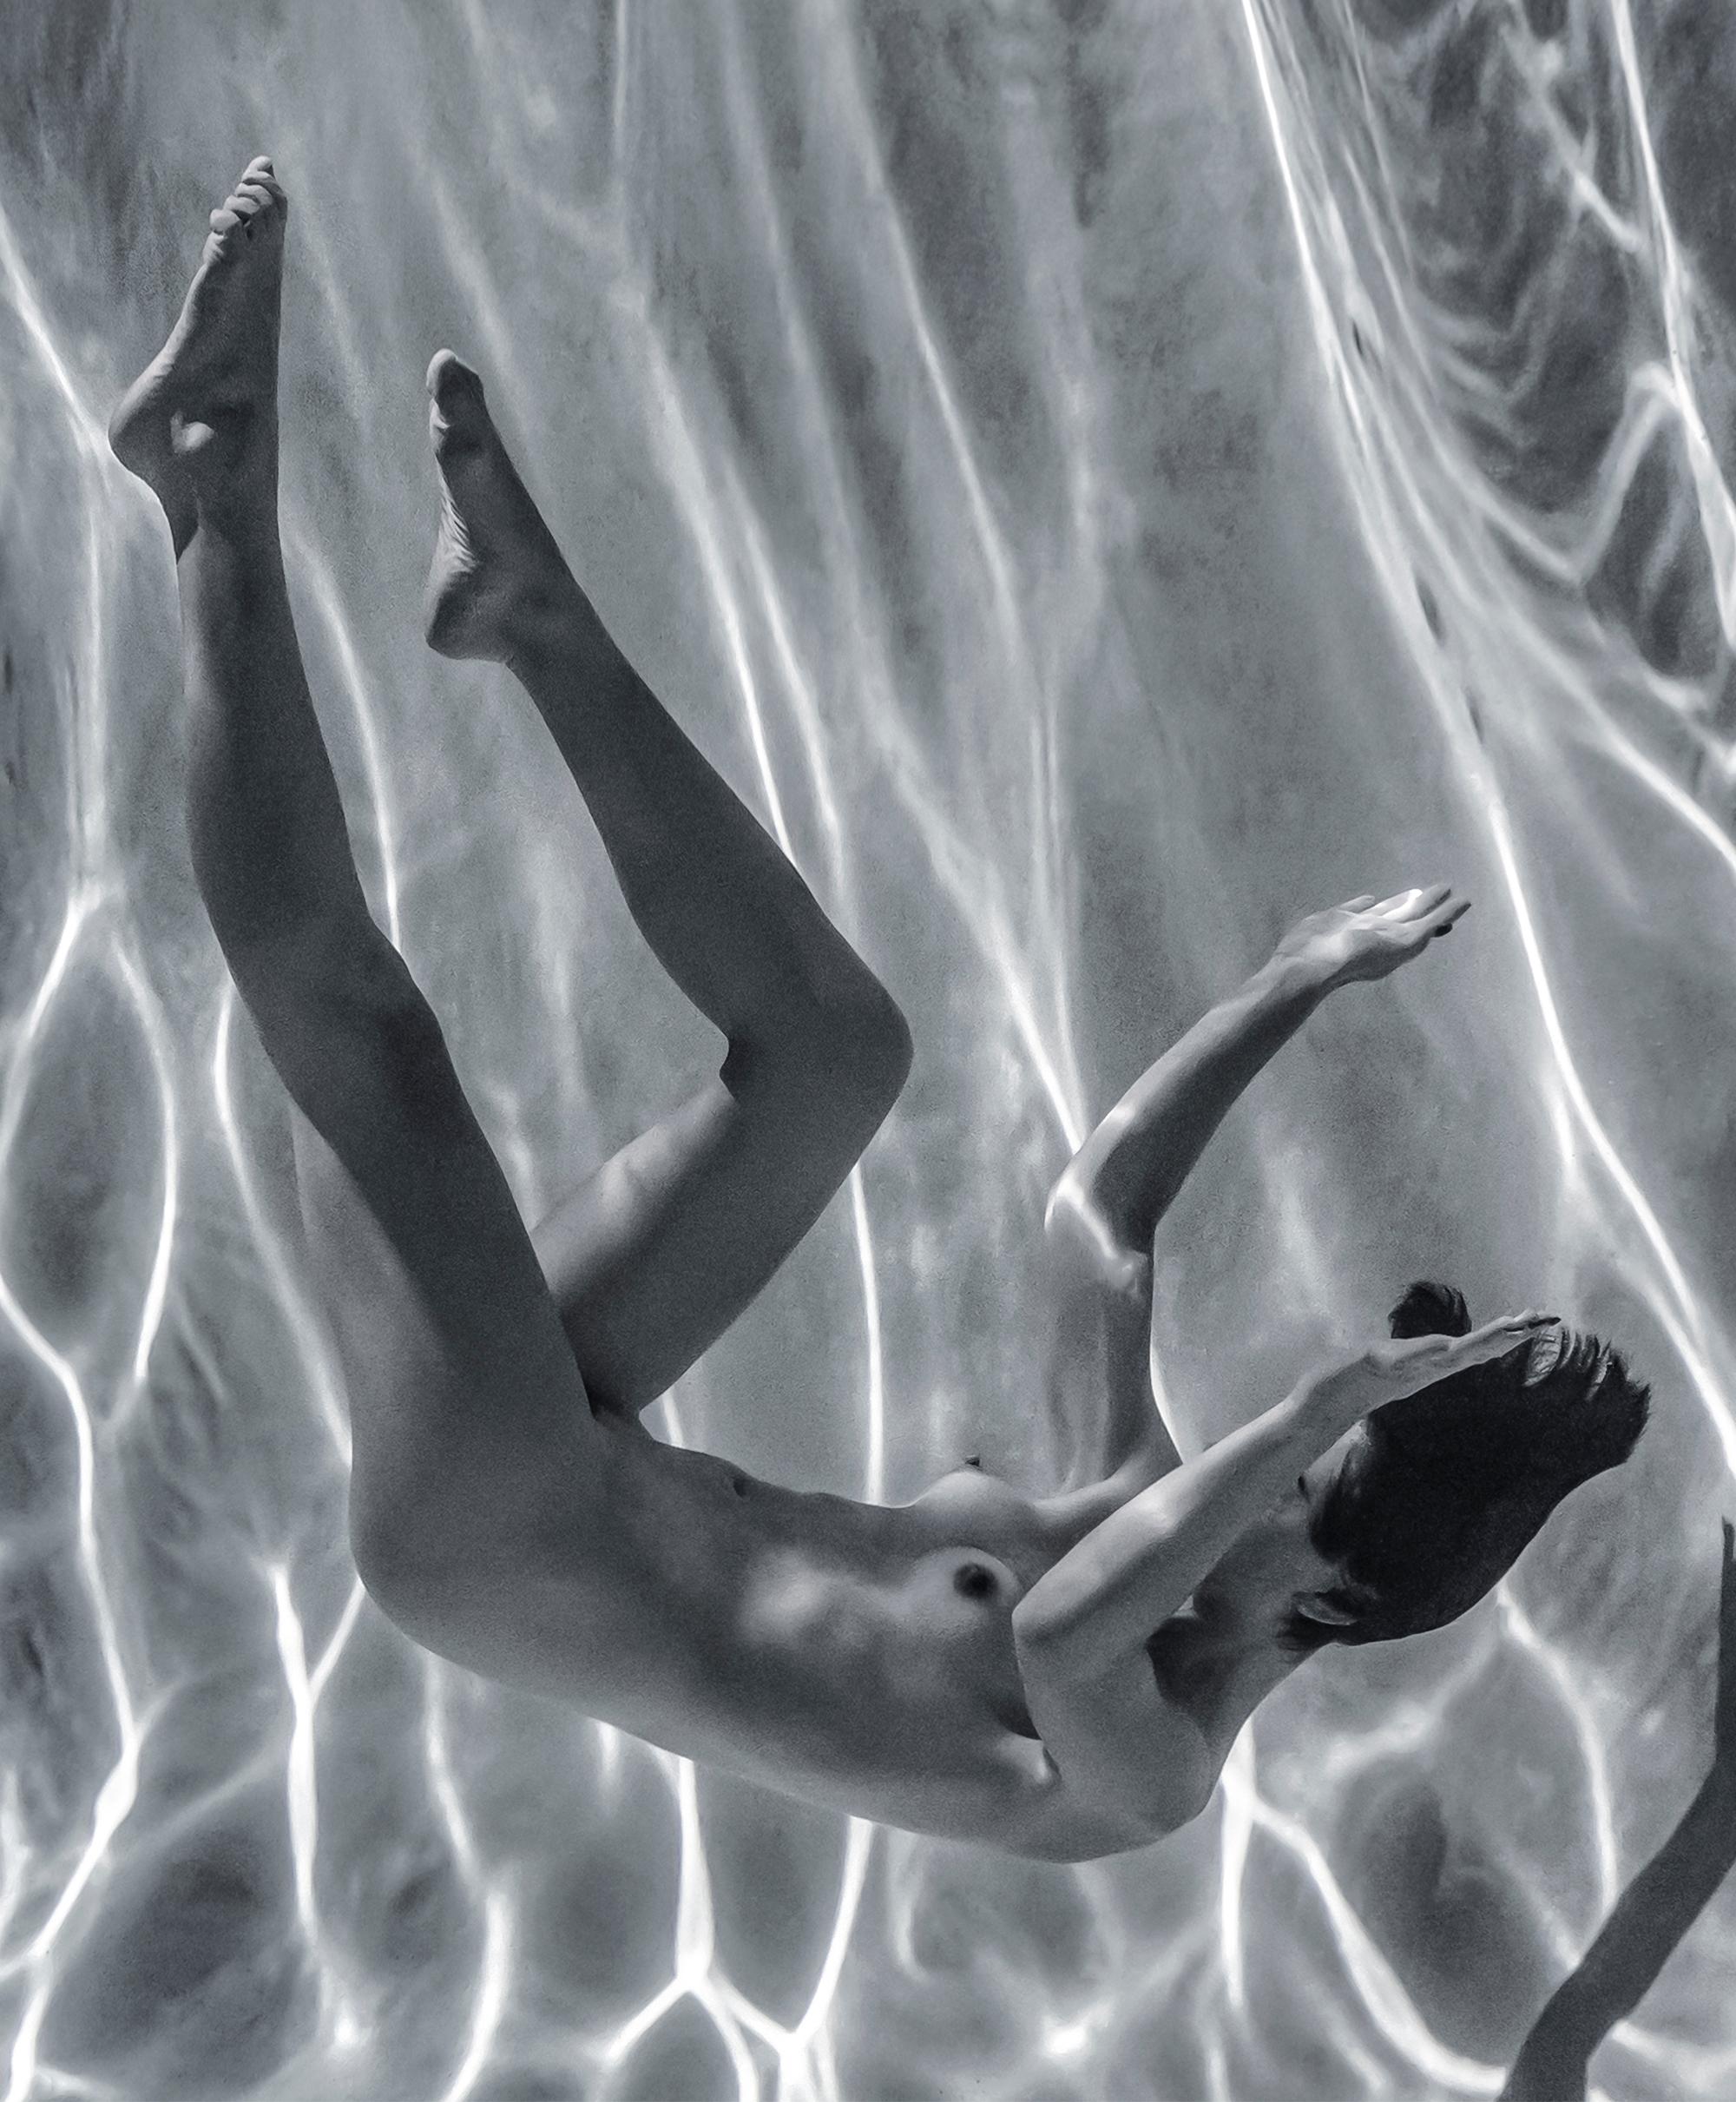 Unterwasser-Schwarz-Weiß-Fotografie einer nackten jungen Frau in einem Schwimmbecken. 

Original-Digitaldruck auf Aluminiumplatte mit schwarzer Rückwand - vom Künstler signiert.
Das Kunstwerk braucht keine zusätzliche Rahmung: Es kann aufgehängt